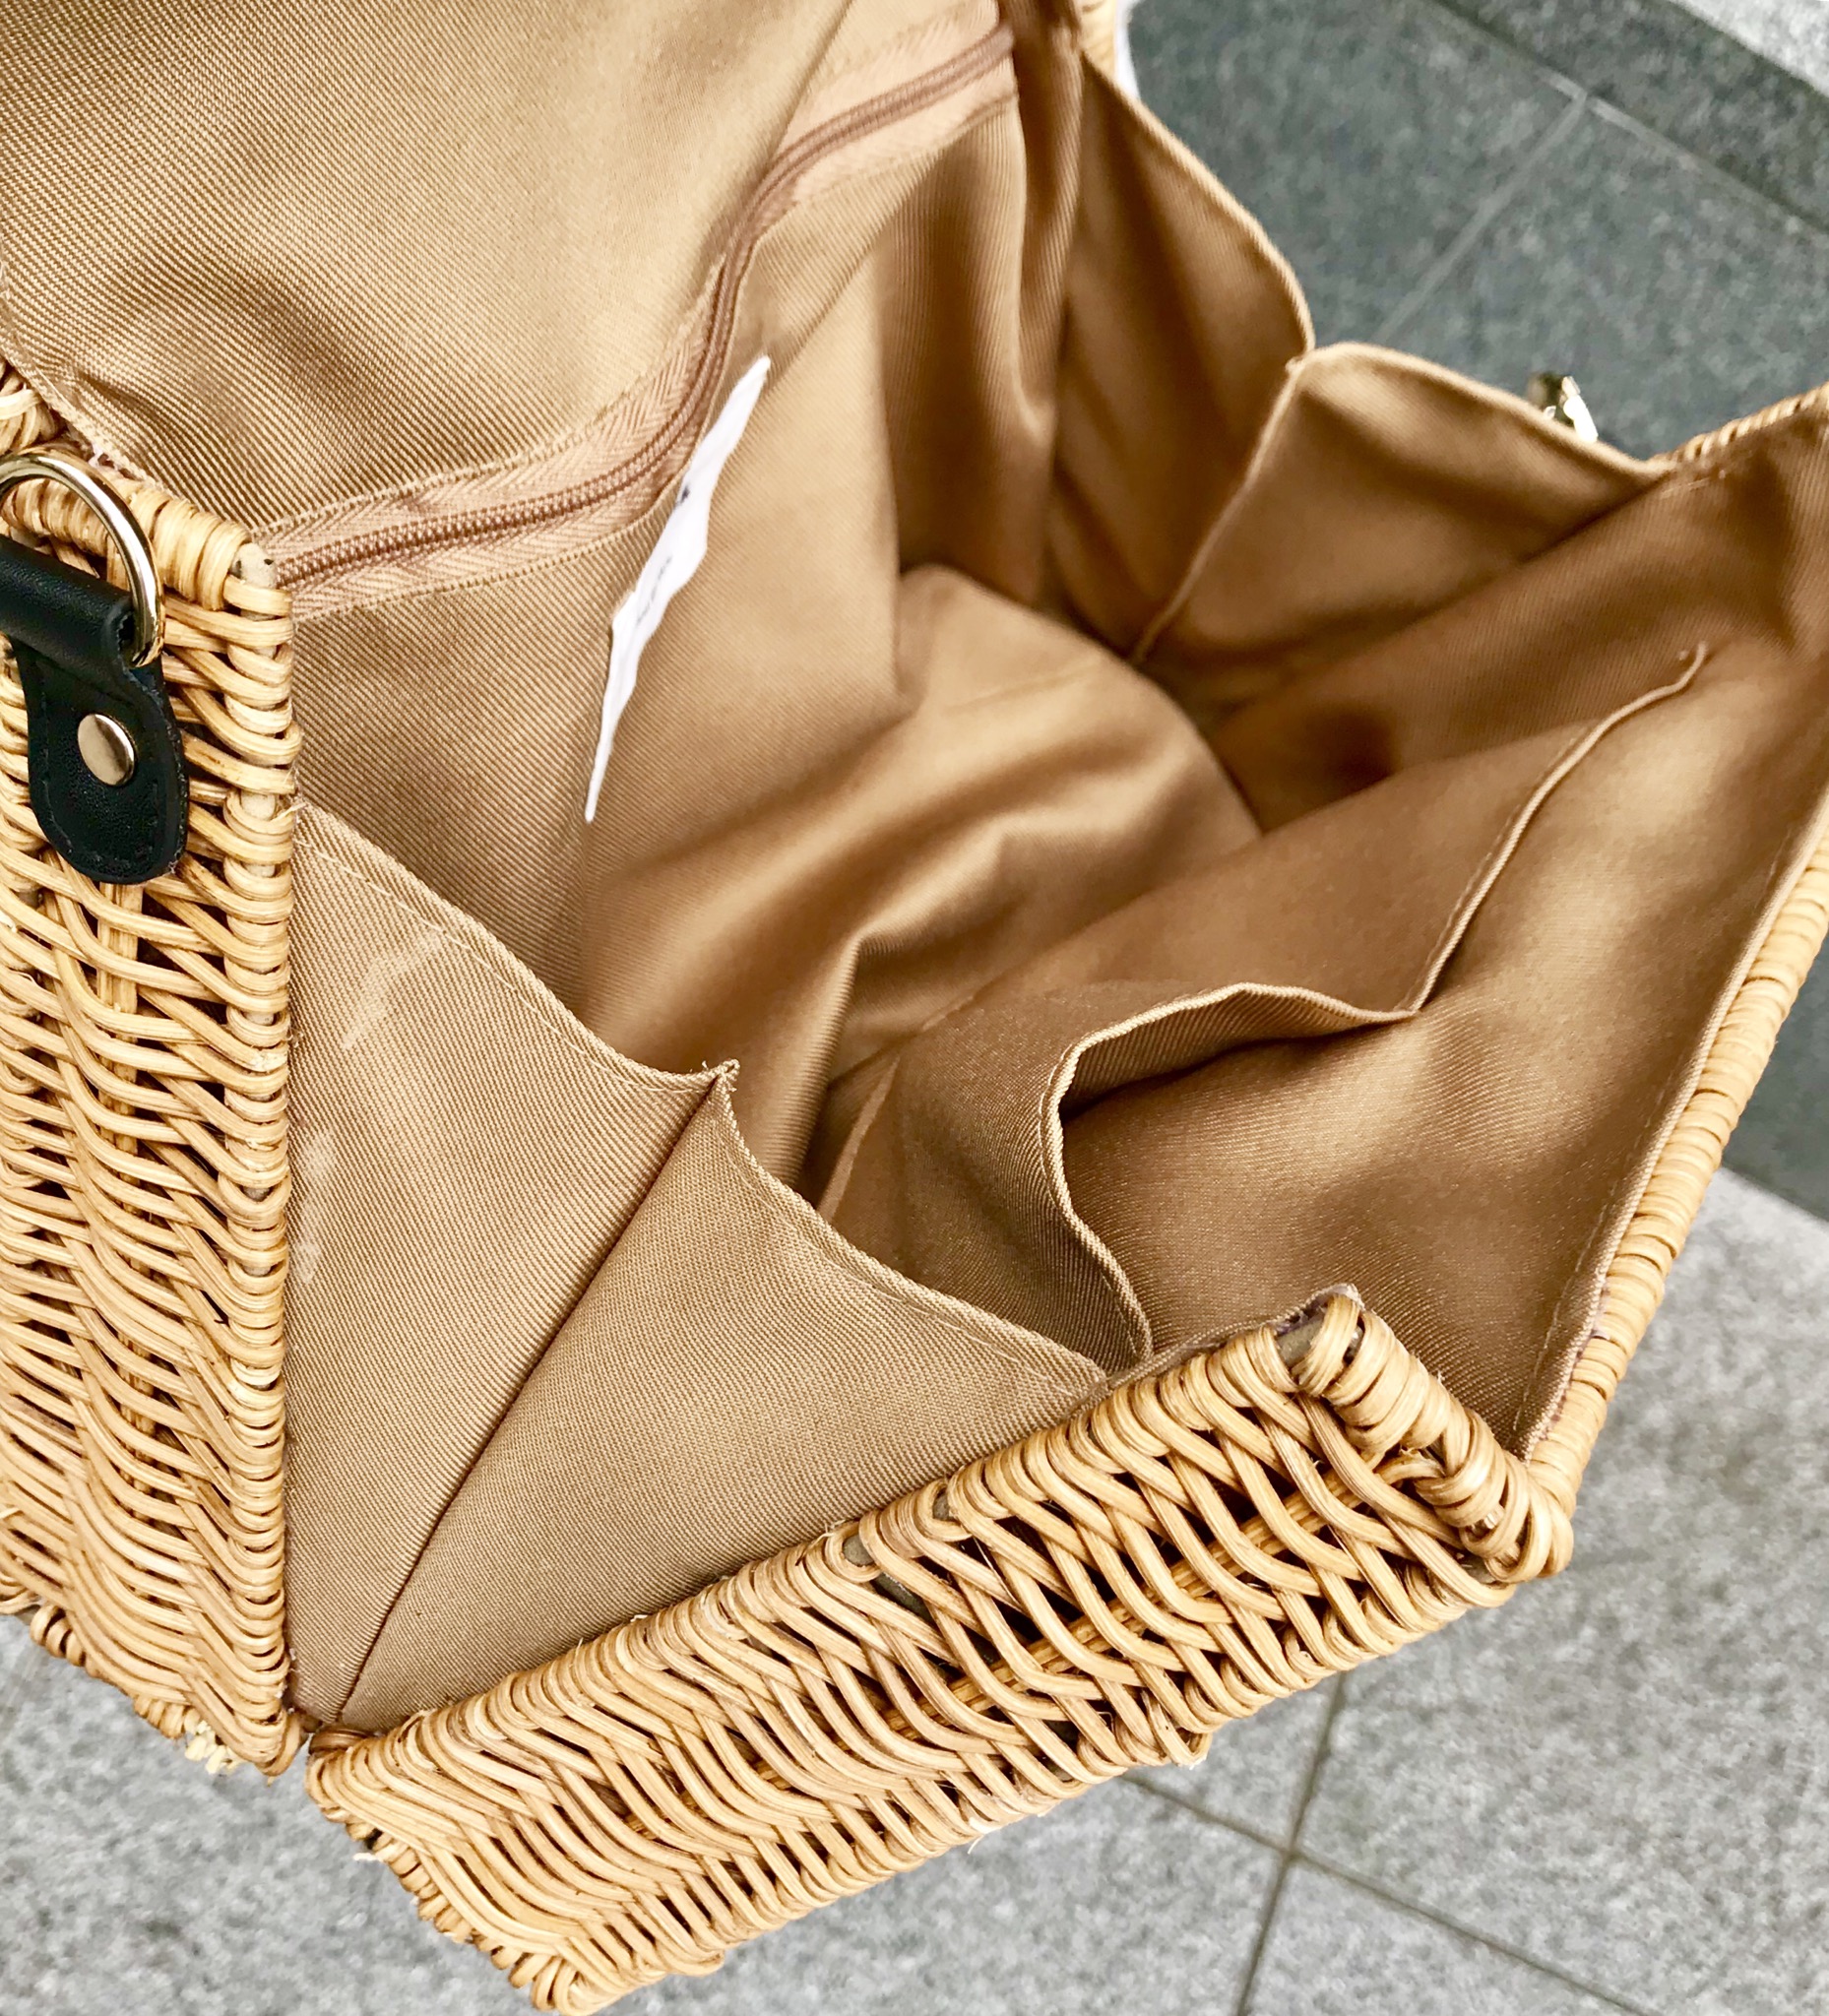 スクラップブック アトネック ScrapBook atneK 有楽町マルイ カゴバッグ バッグ bag basket ショルダーバッグ 可愛い 可愛いバッグ ラタン素材 夏バッグ